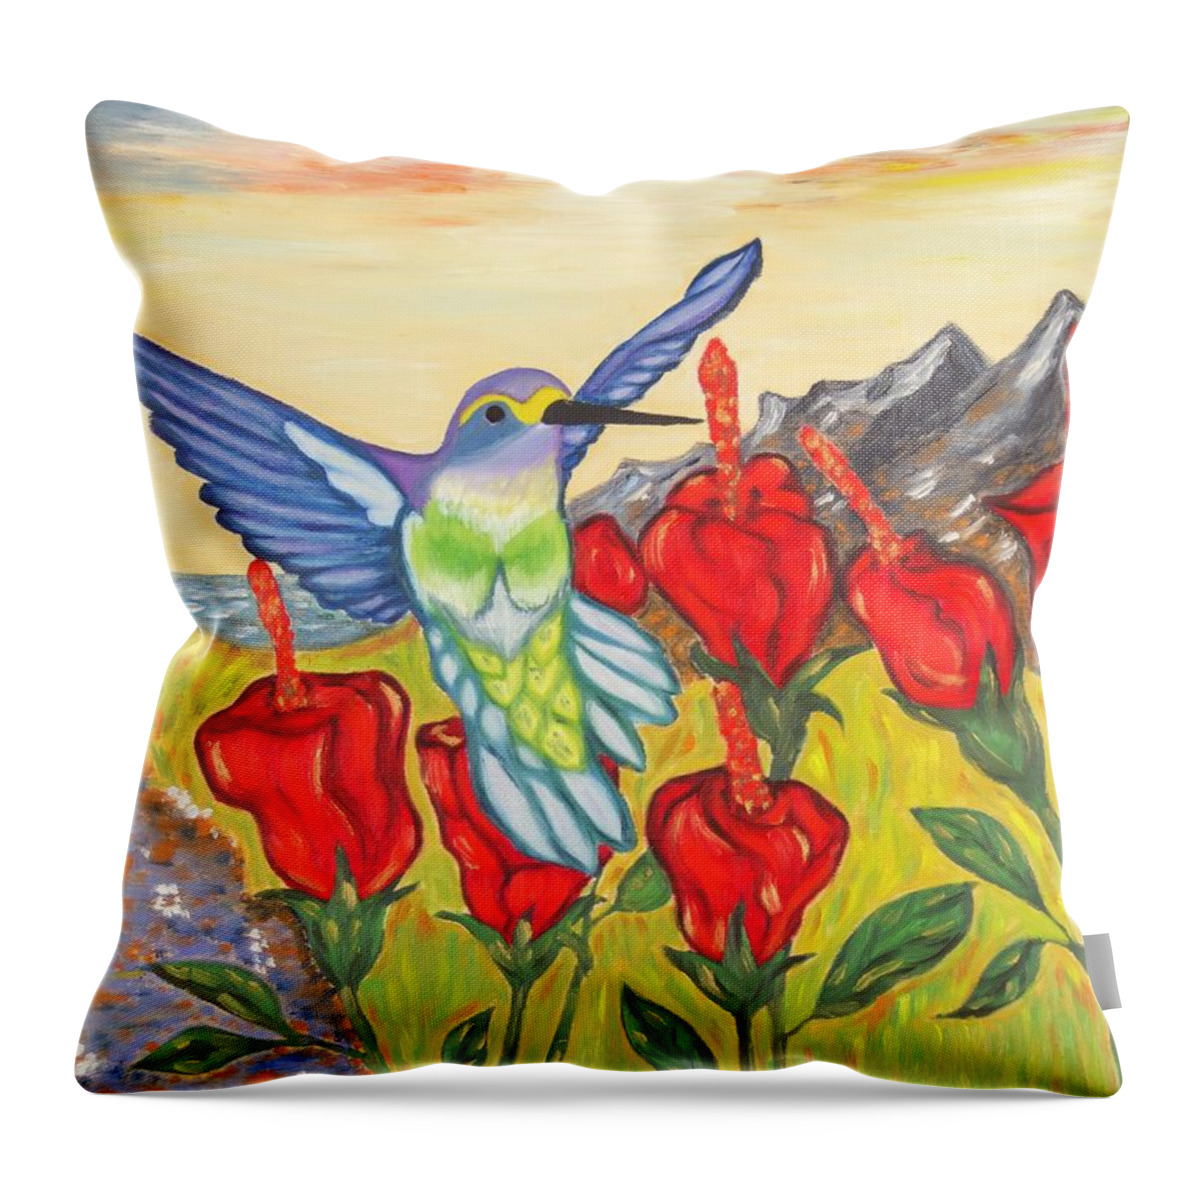 Hummingbird Throw Pillow featuring the painting Nectar of Life - Hummingbird by Neslihan Ergul Colley